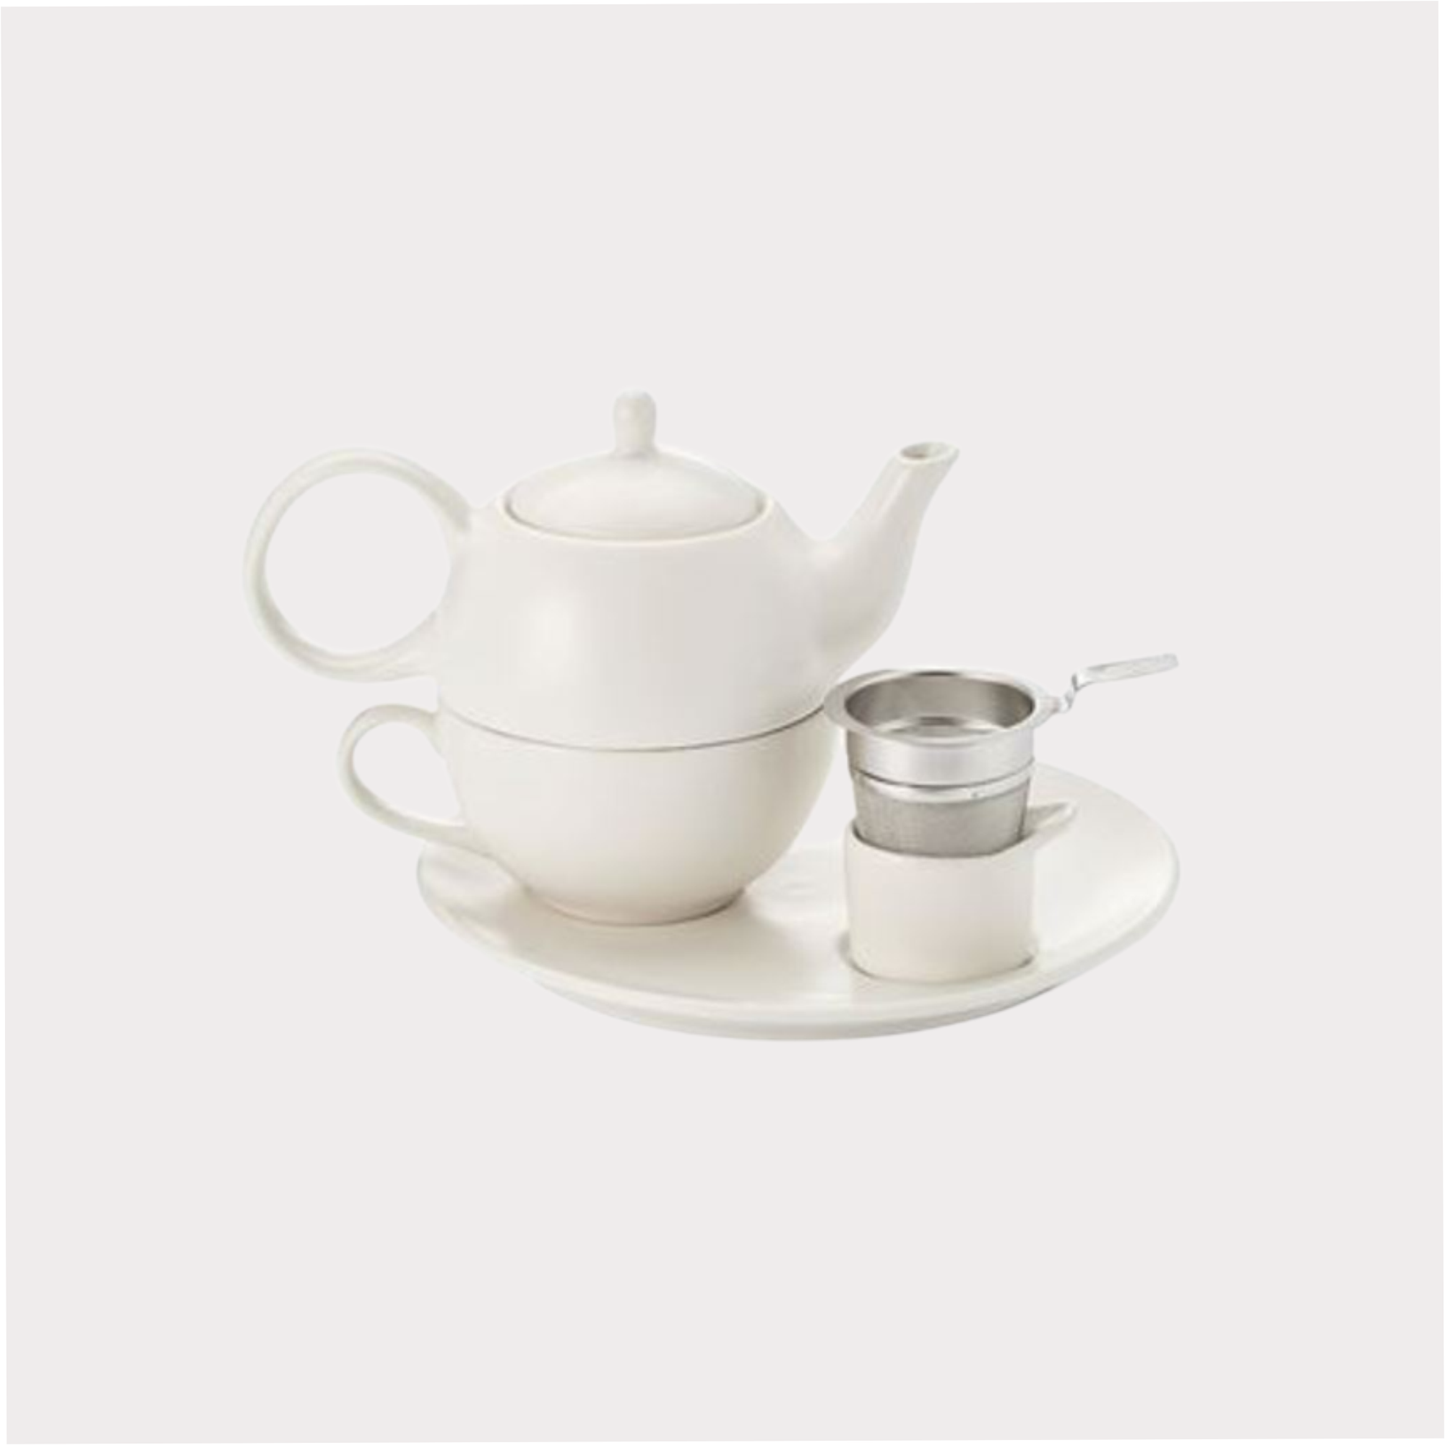 Tea for one Set "Malina" Keramik matt, 5-teilig, exklusive Teesieb Kanne: 0,4 l, Tasse: 0,2 l, Unterteller: Ø 21 cm